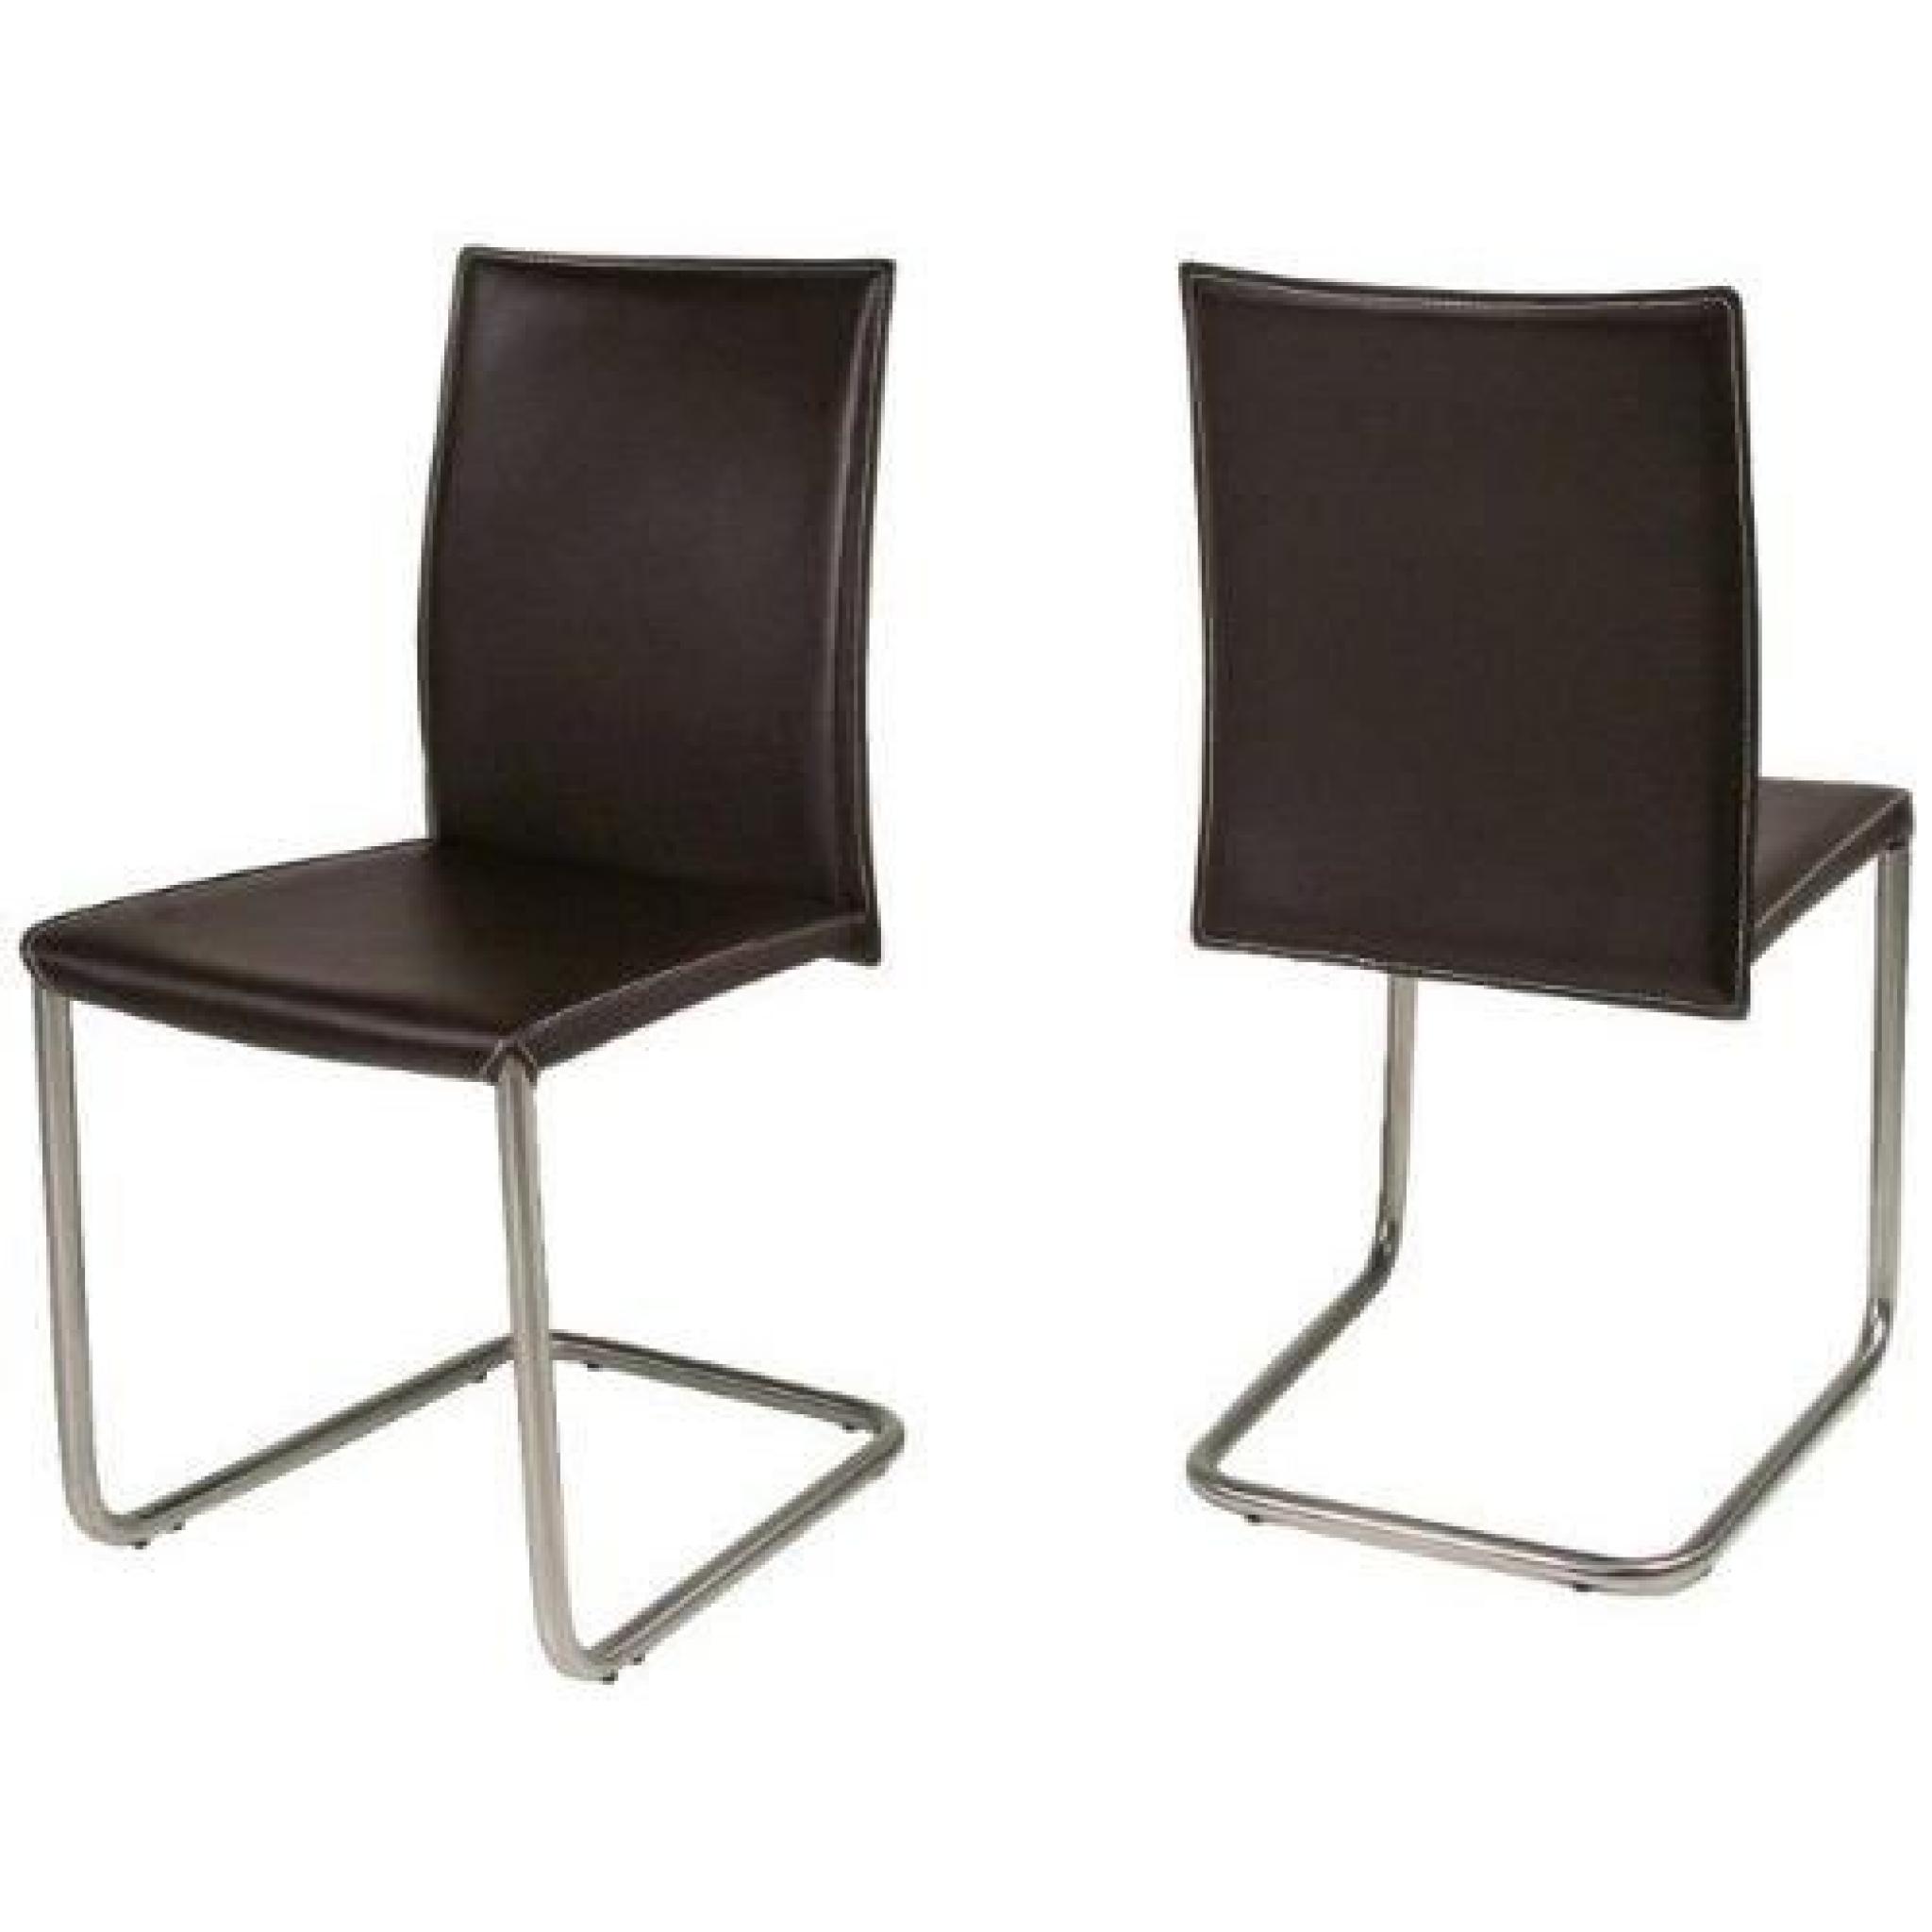 AC Design Furniture 45762 Emma Lot de 2 chaises Cantilever 100 % cuir régénéré avec surpiqûres Marron/crème…